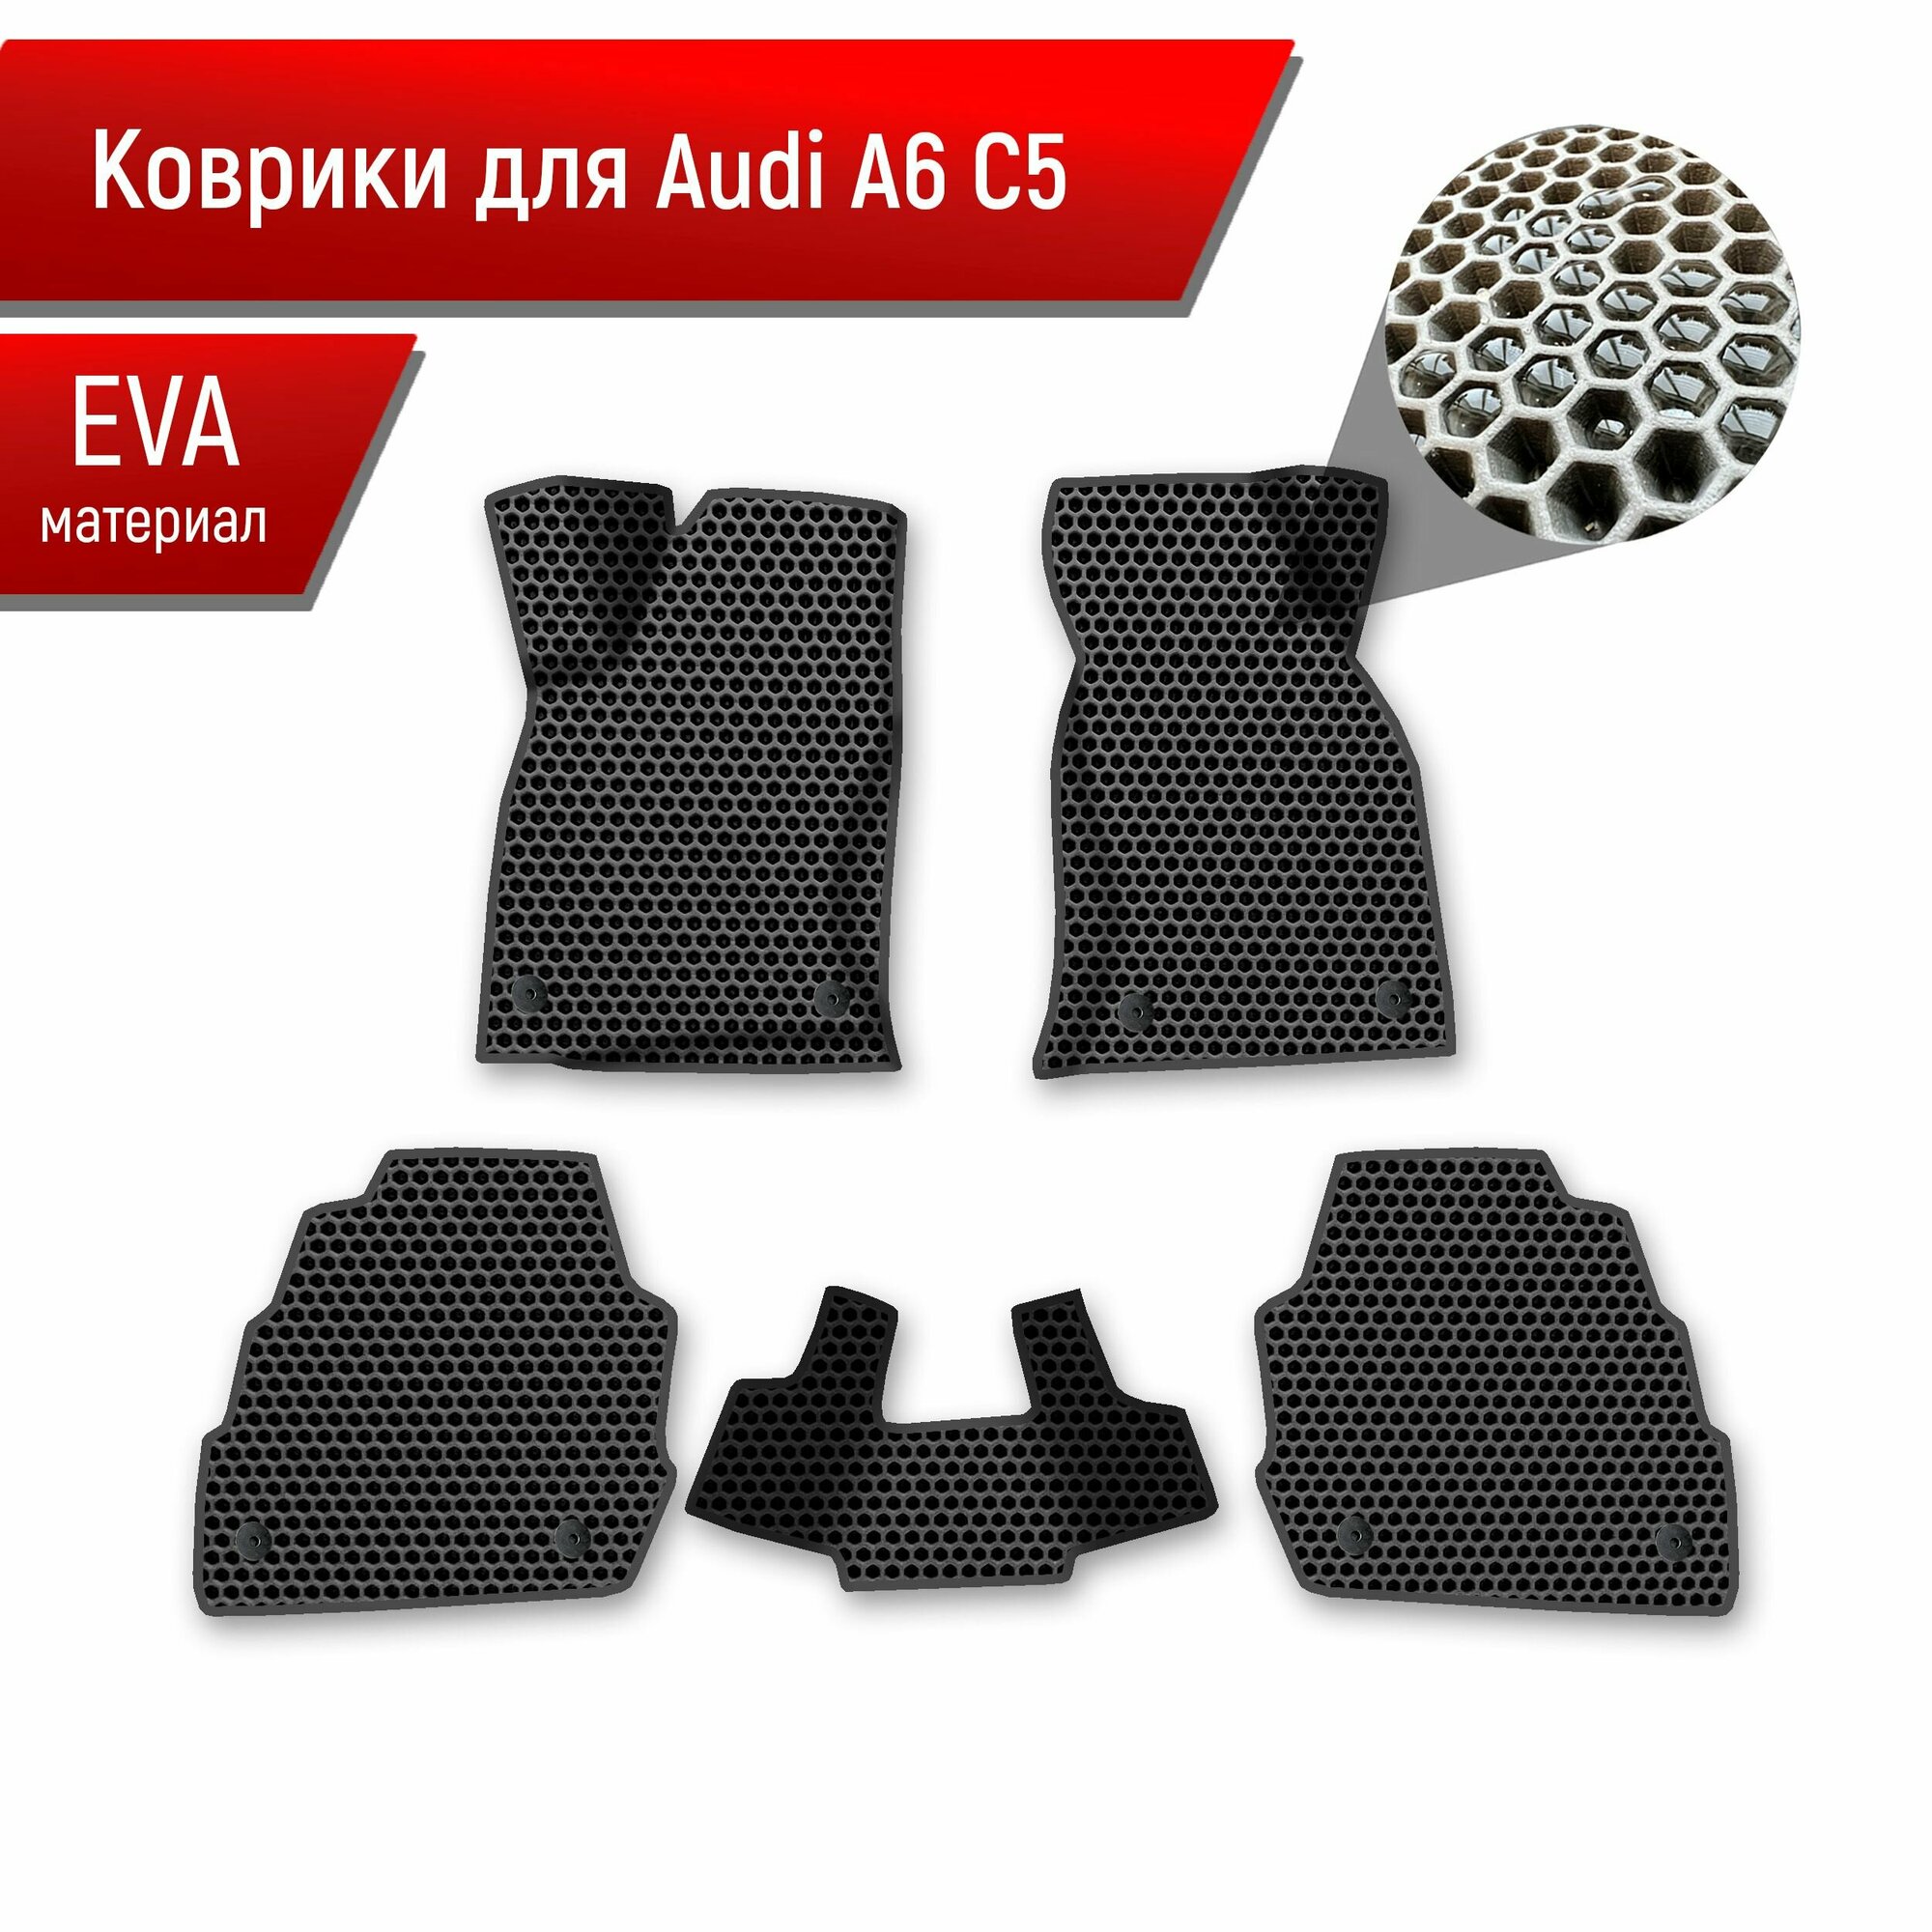 Коврики ЭВА сота для авто Audi A6 C5 / Ауди А6 С5 1997-2004 Г. В. Чёрный с Чёрным кантом